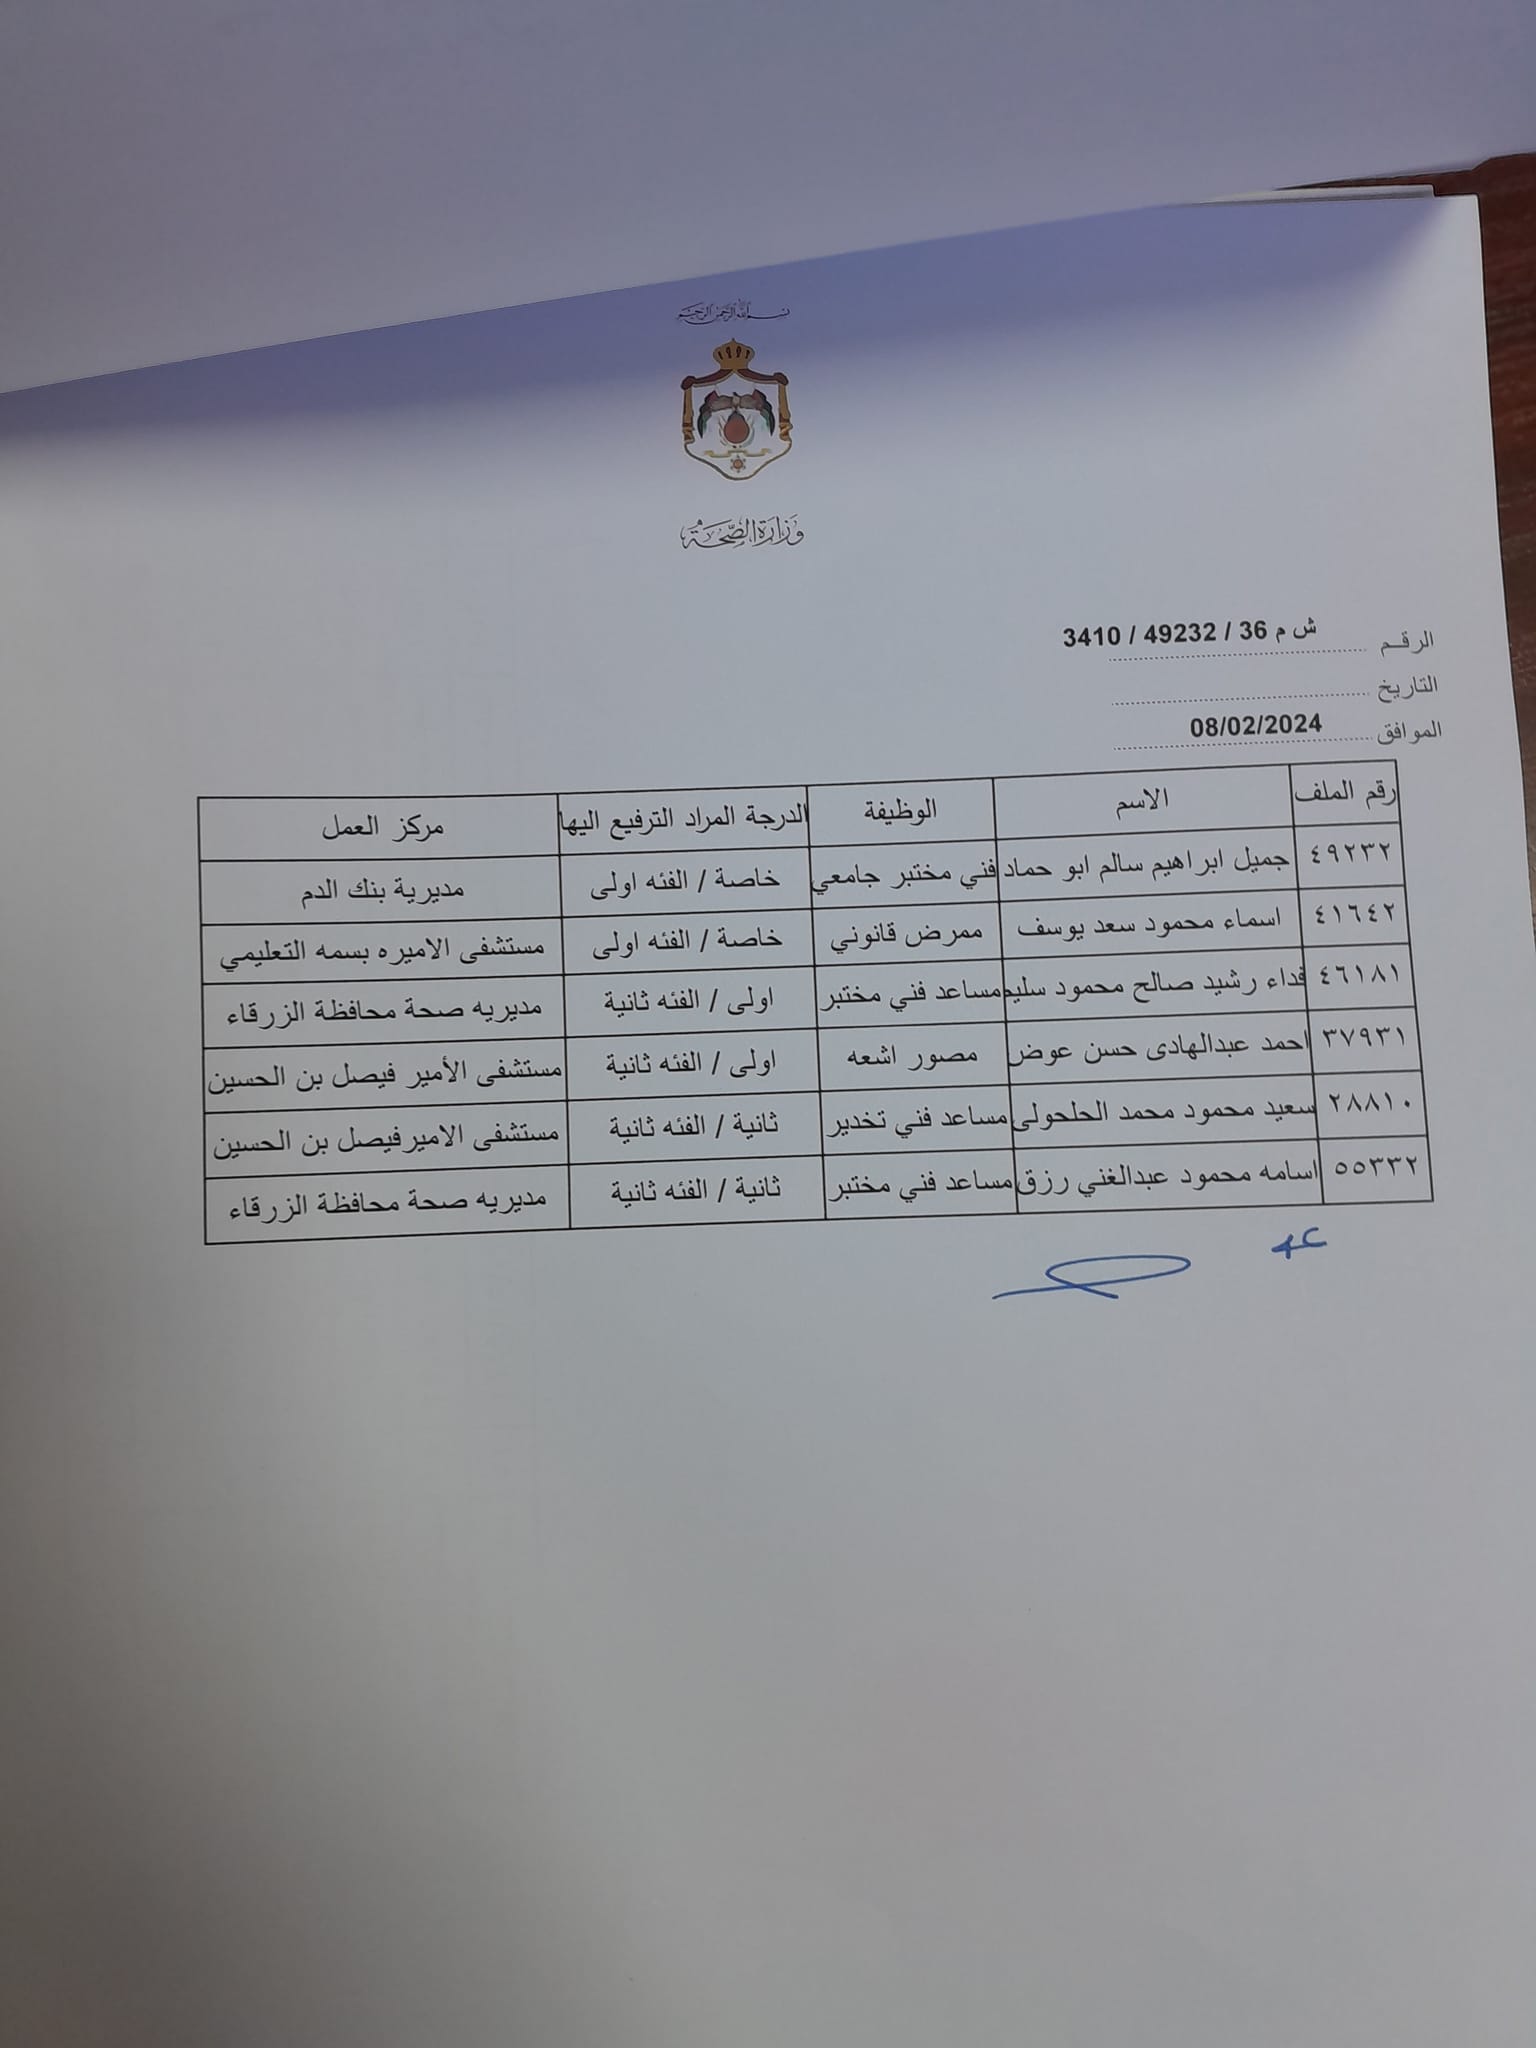 انهاء خدمات موظفين في وزارة الصحة - اسماء